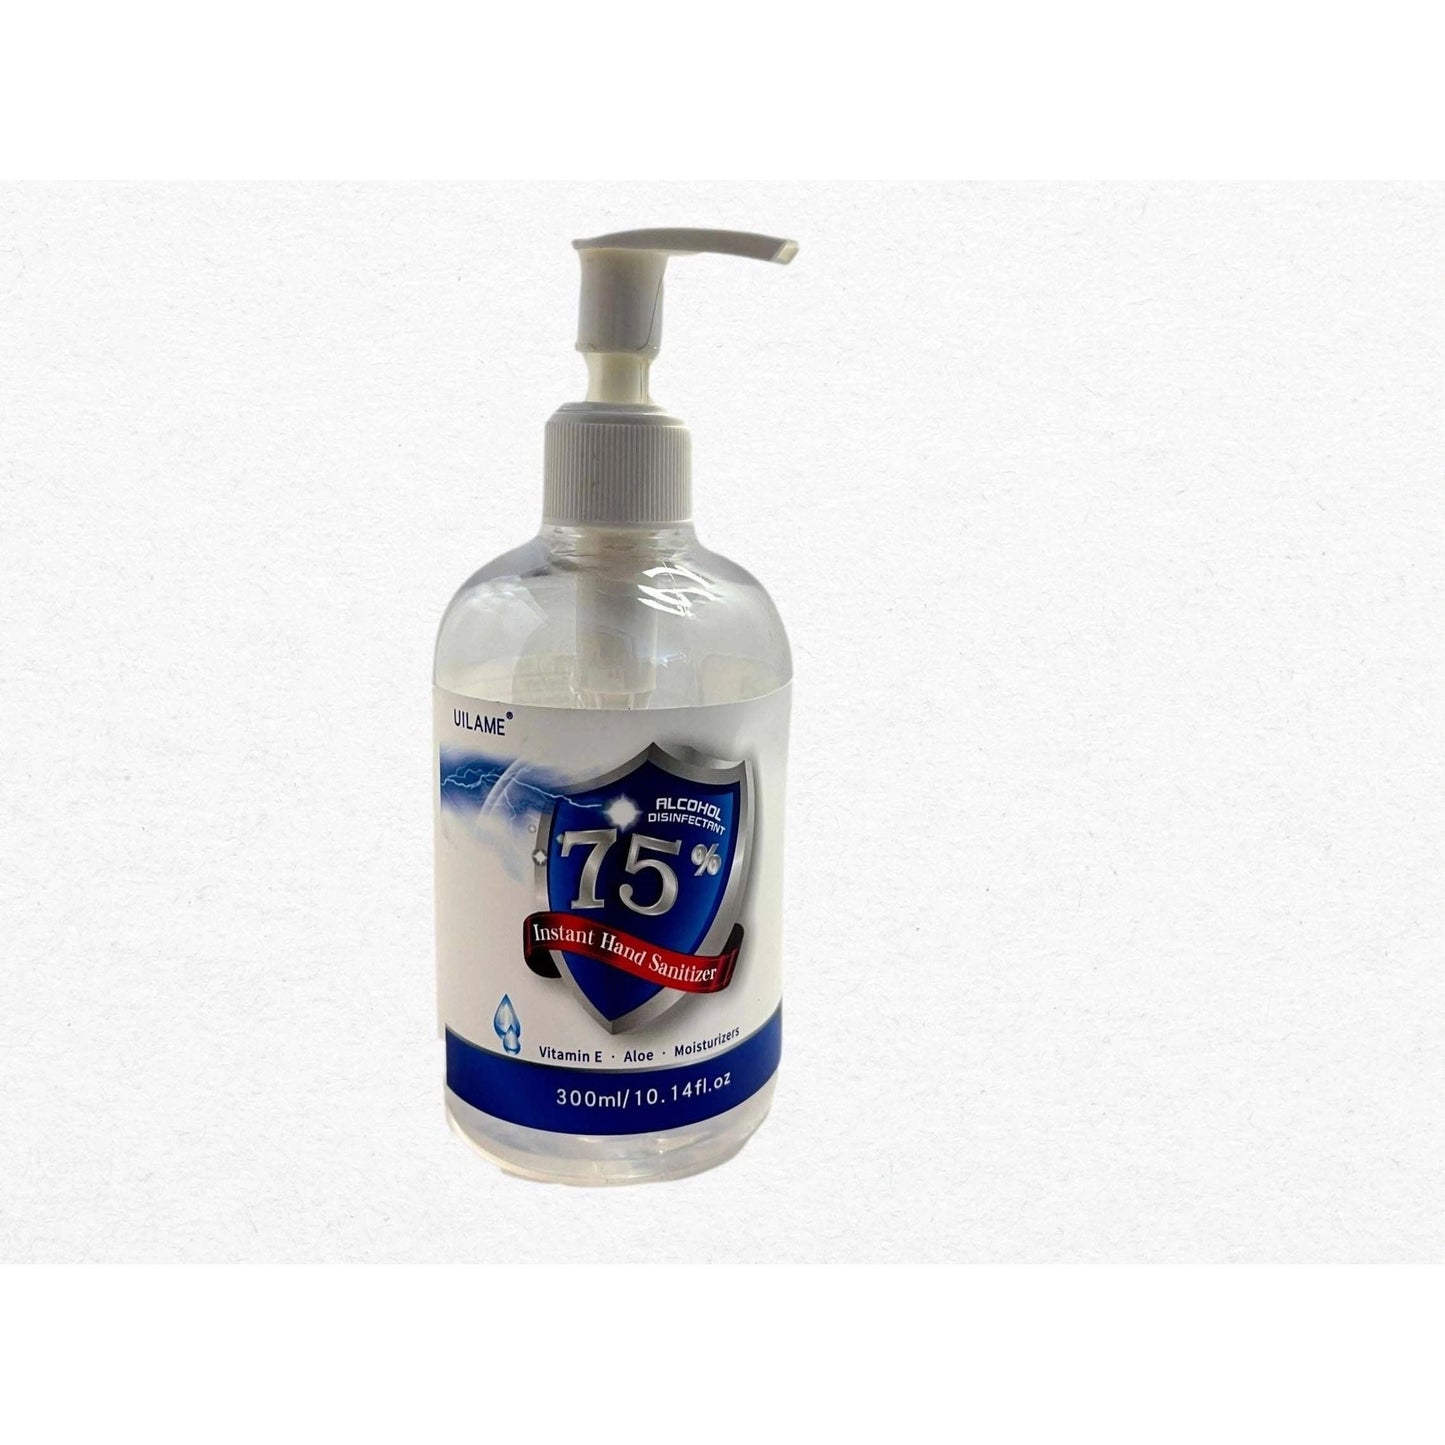 75% Instant Alcohol Hand Sanitizing Gel - 100ml/3.38 fl oz or 300ml/10.14 fl oz.